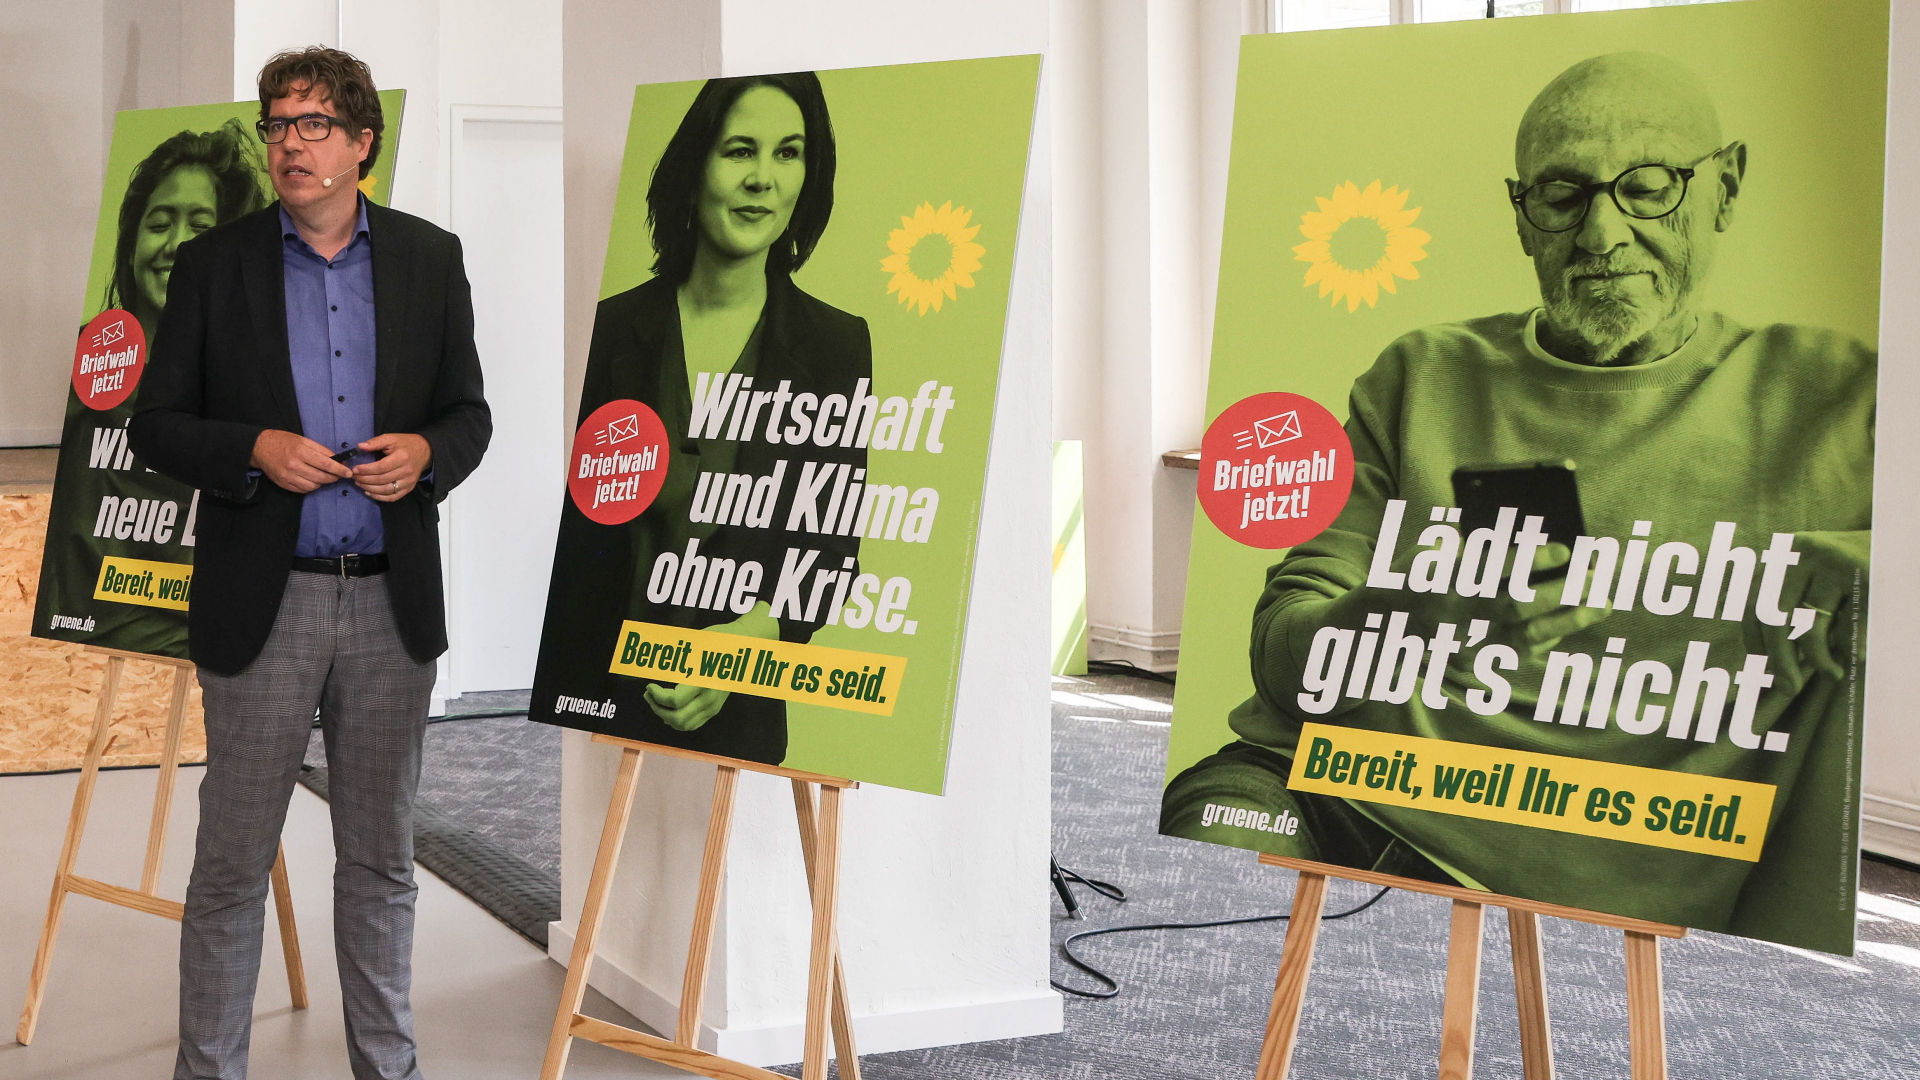 Bundesgeschäftsführer Kellner präsentiert die Wahlkampagne der Grünen.